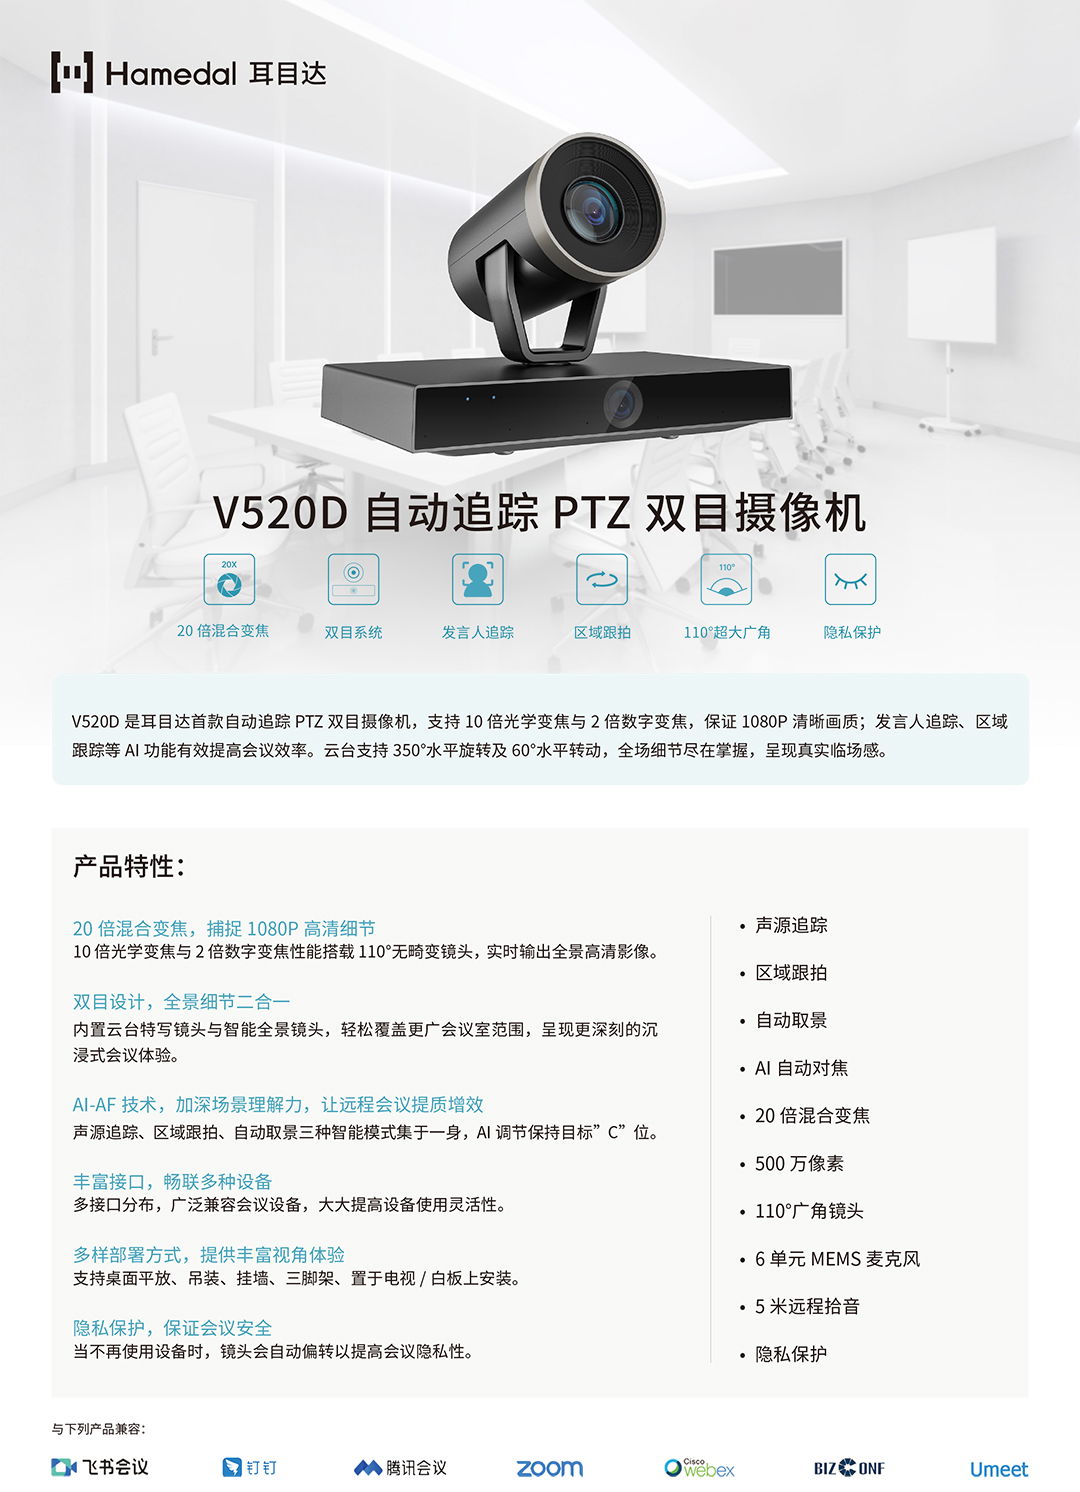 耳目达V520D产品手册_v22.jpg